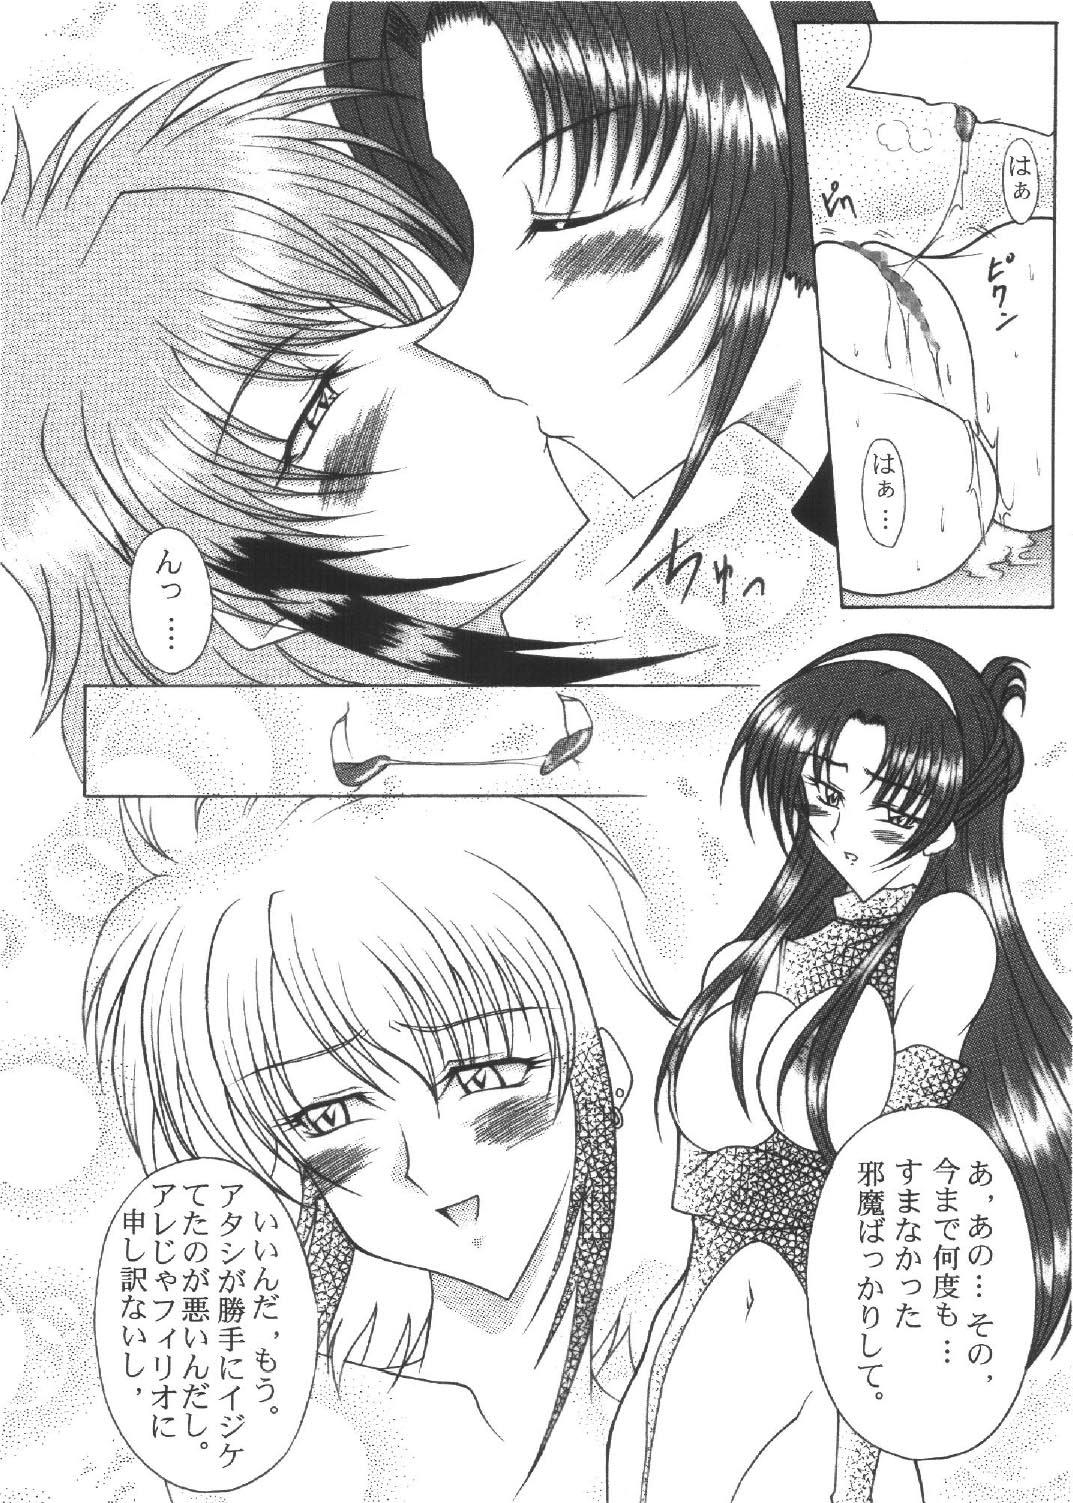 Smooth Ryuusei, Yoru o Kirisai te Ver . X - Super robot wars Chick - Page 12